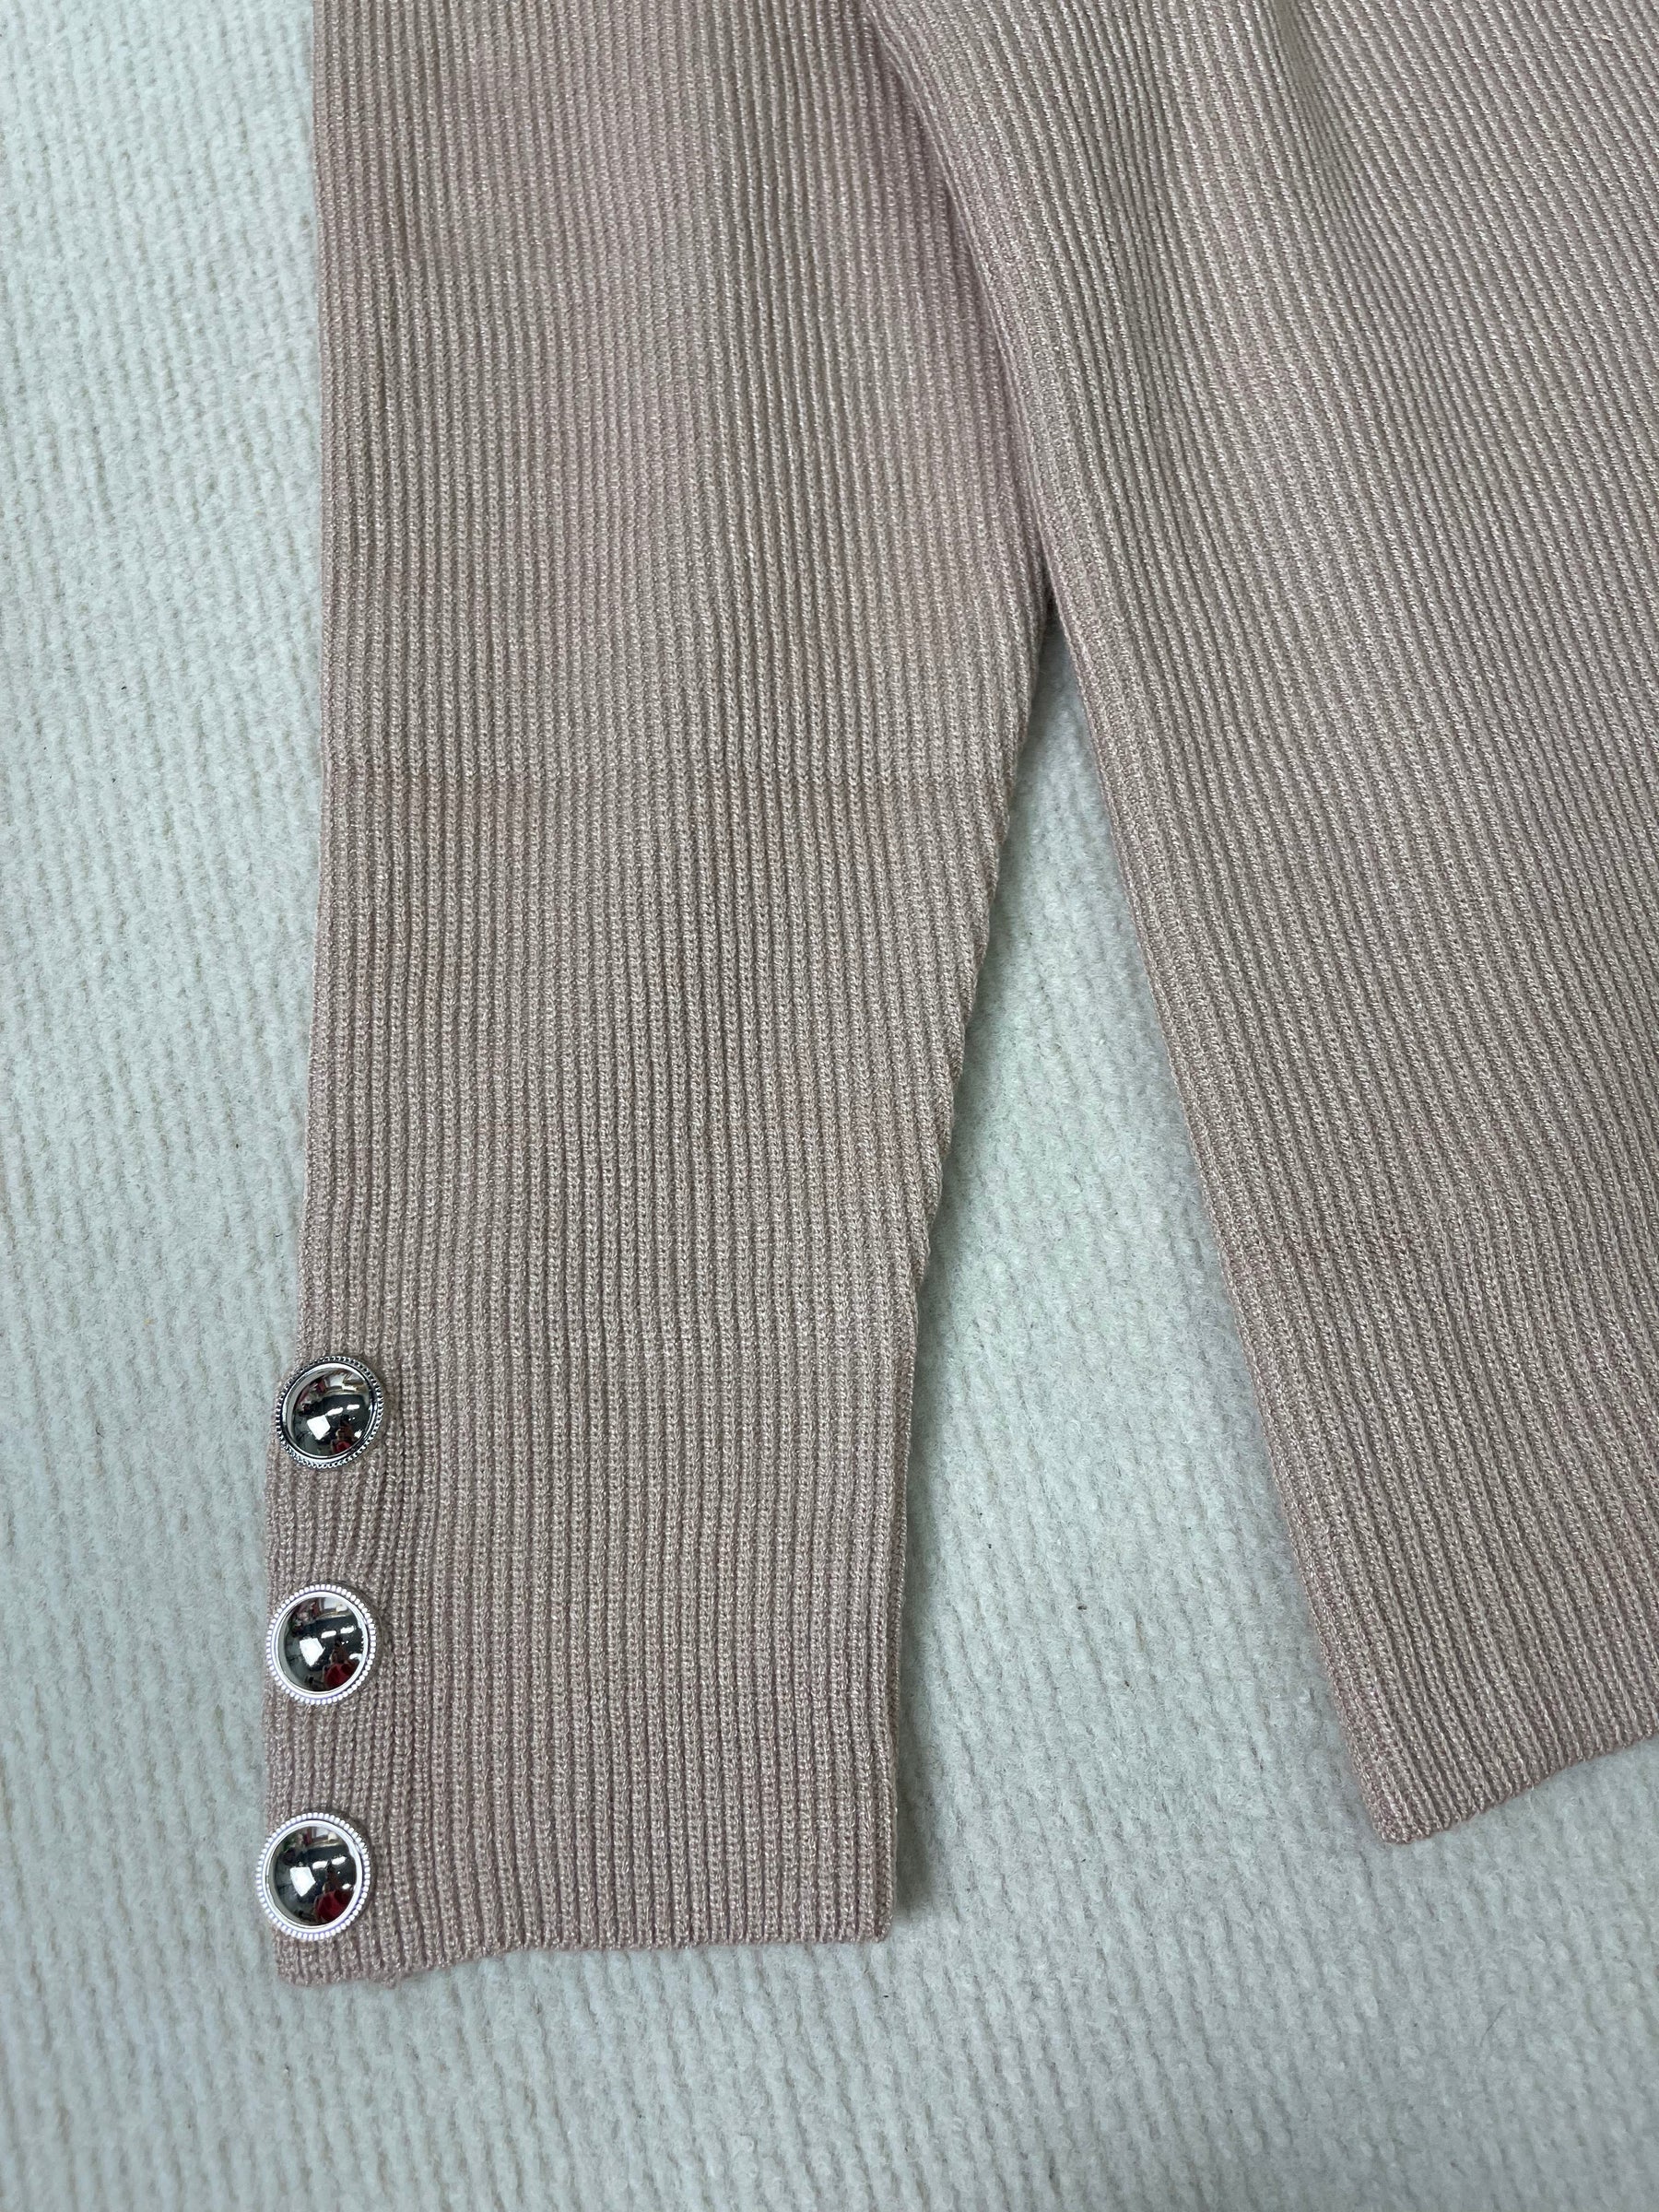 StrickSinn® - Moderner einfarbiger Pullover mit hohem Halsausschnitt